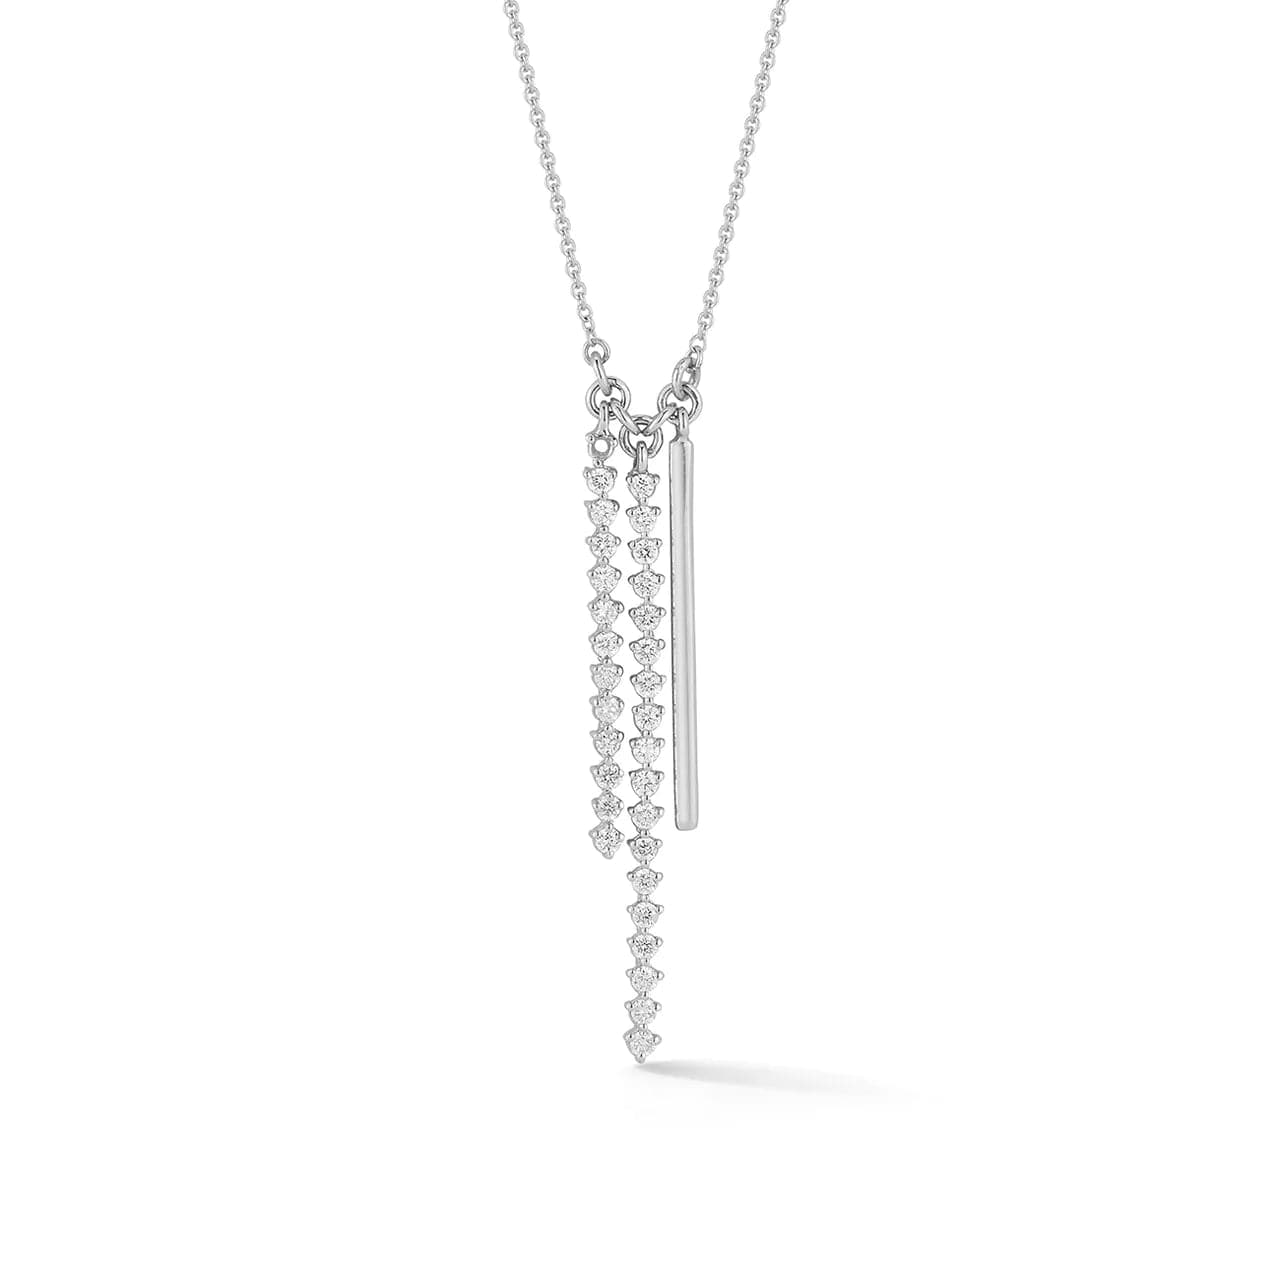 Dana Rebecca Designs Necklaces and Pendants Vivian Lily Trio Charm Diamond Necklace - White Gold